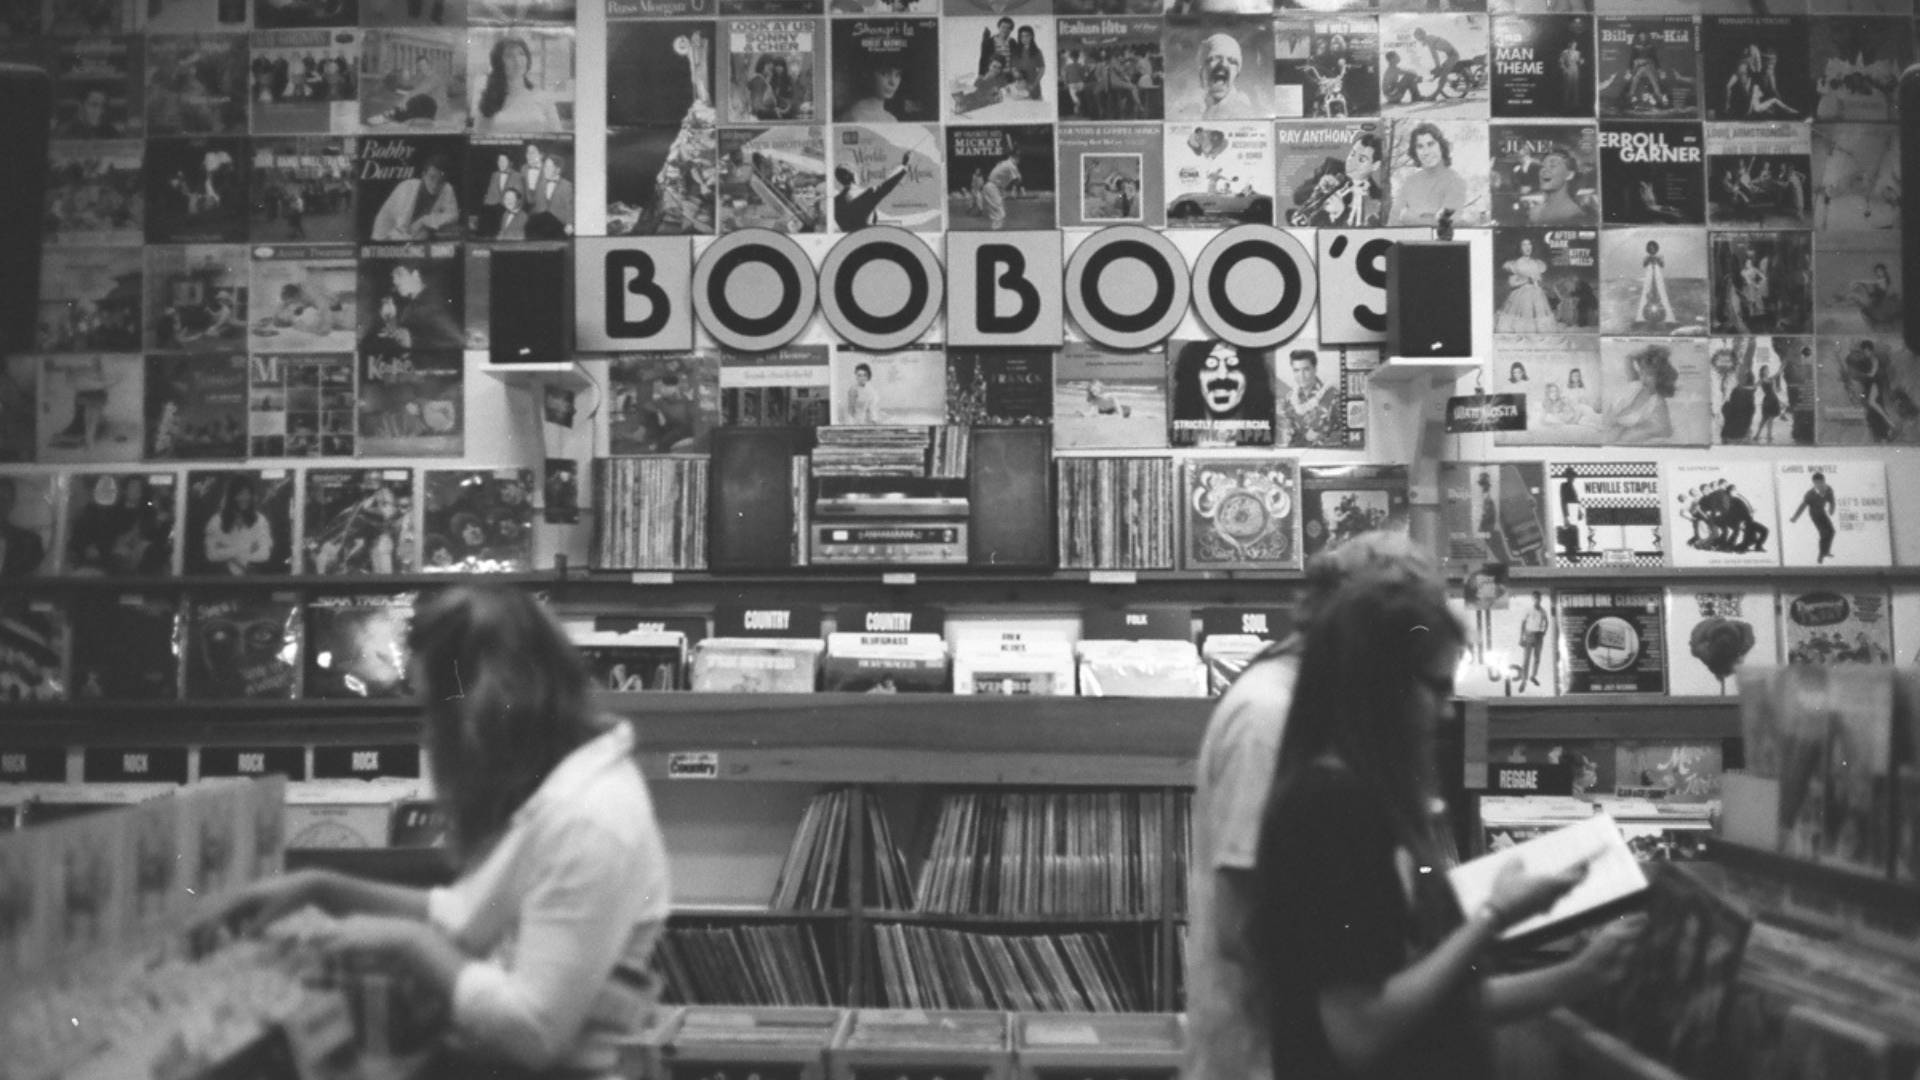 Boo Boo Records Image